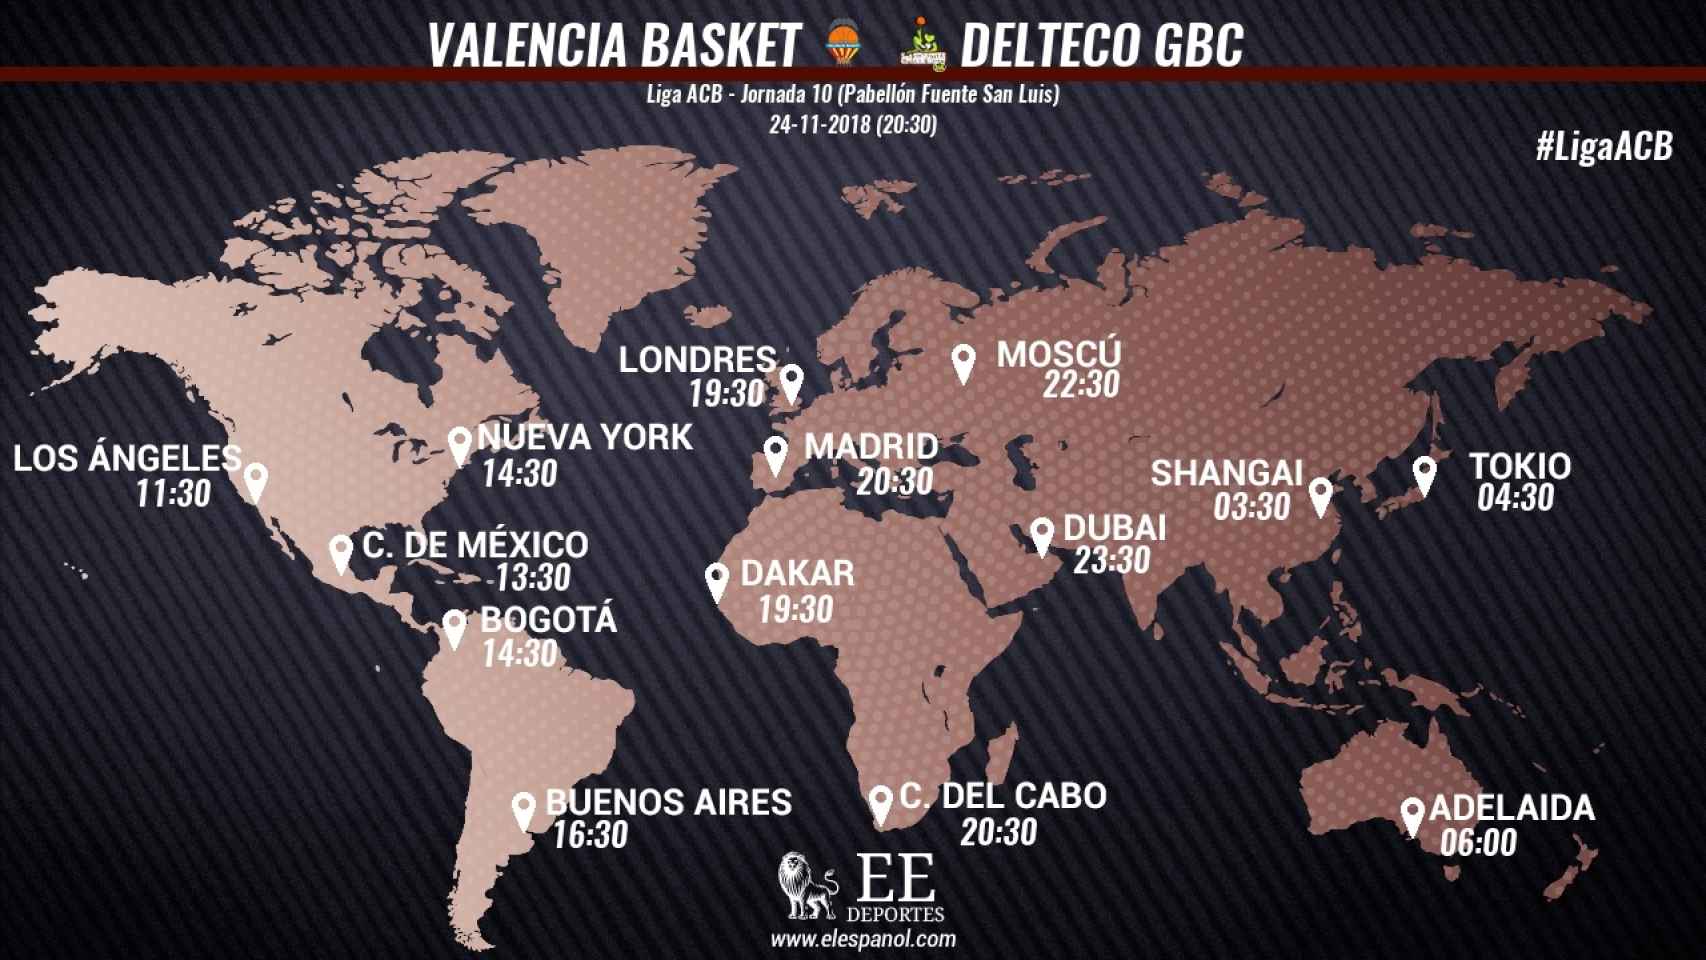 Horario del Valencia Basket - Delteco GBC